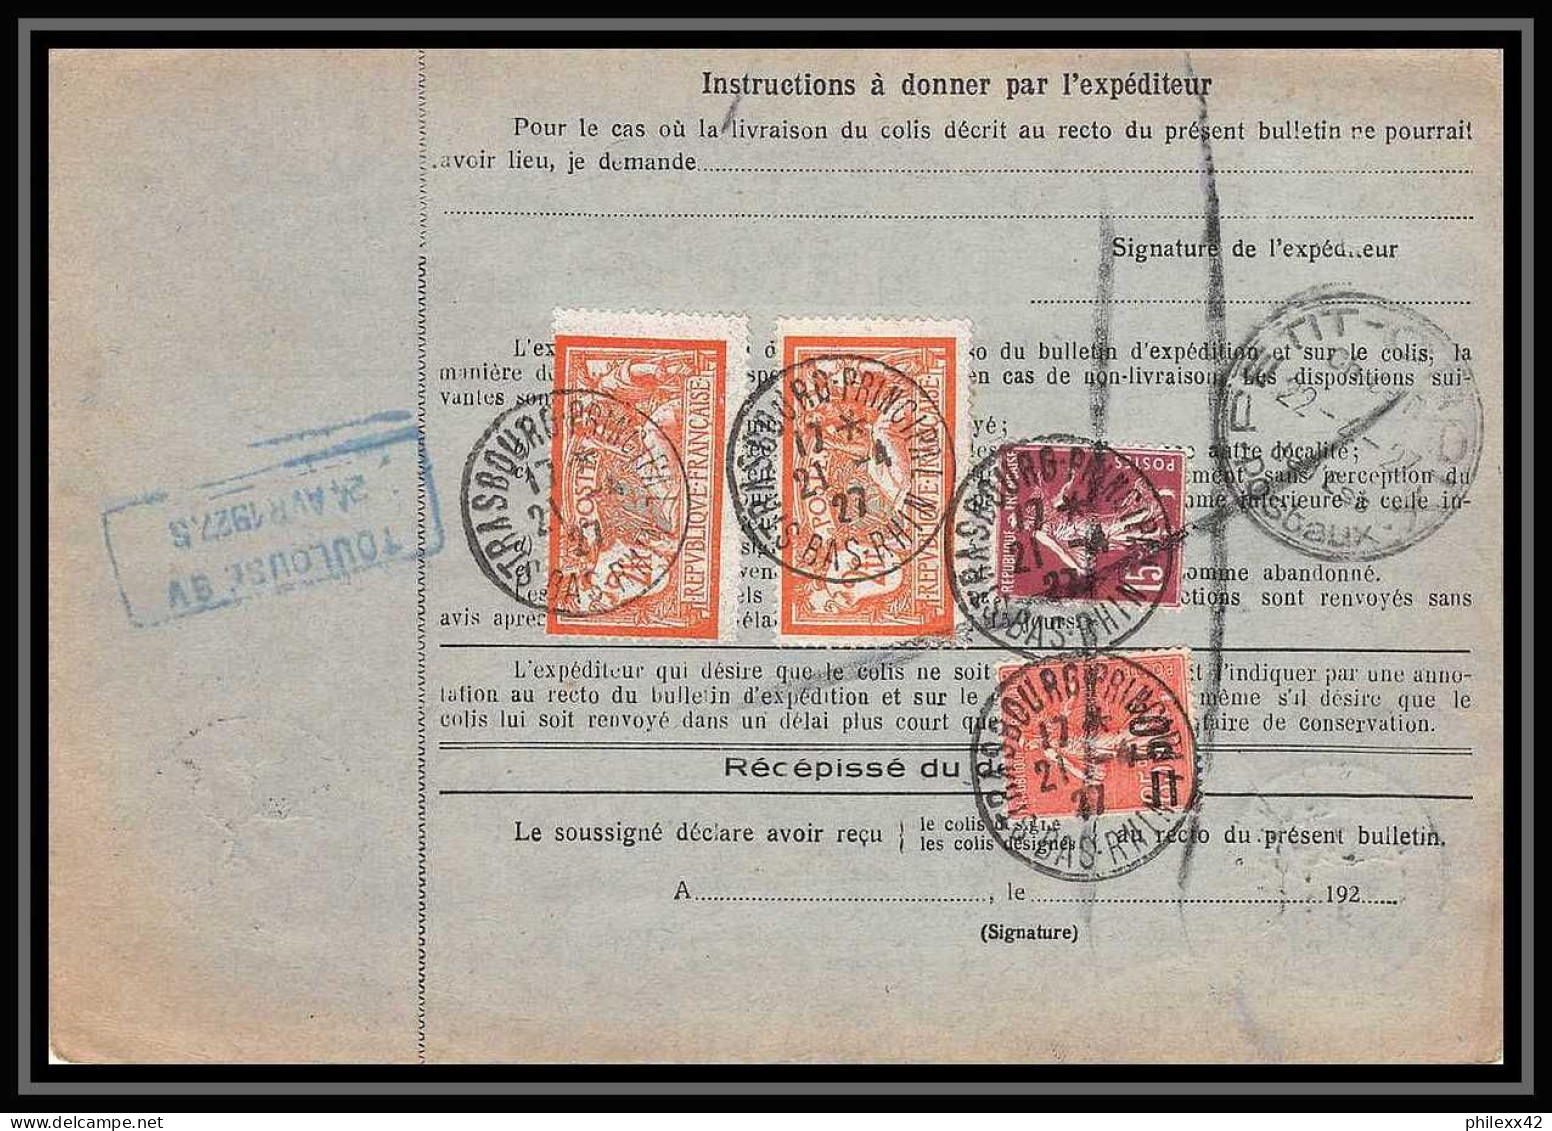 25086 Bulletin D'expédition France Colis Postaux Fiscal Haut Rhin 1927 Strasbourg Semeuse Merson 145 Alsace-Lorraine  - Covers & Documents